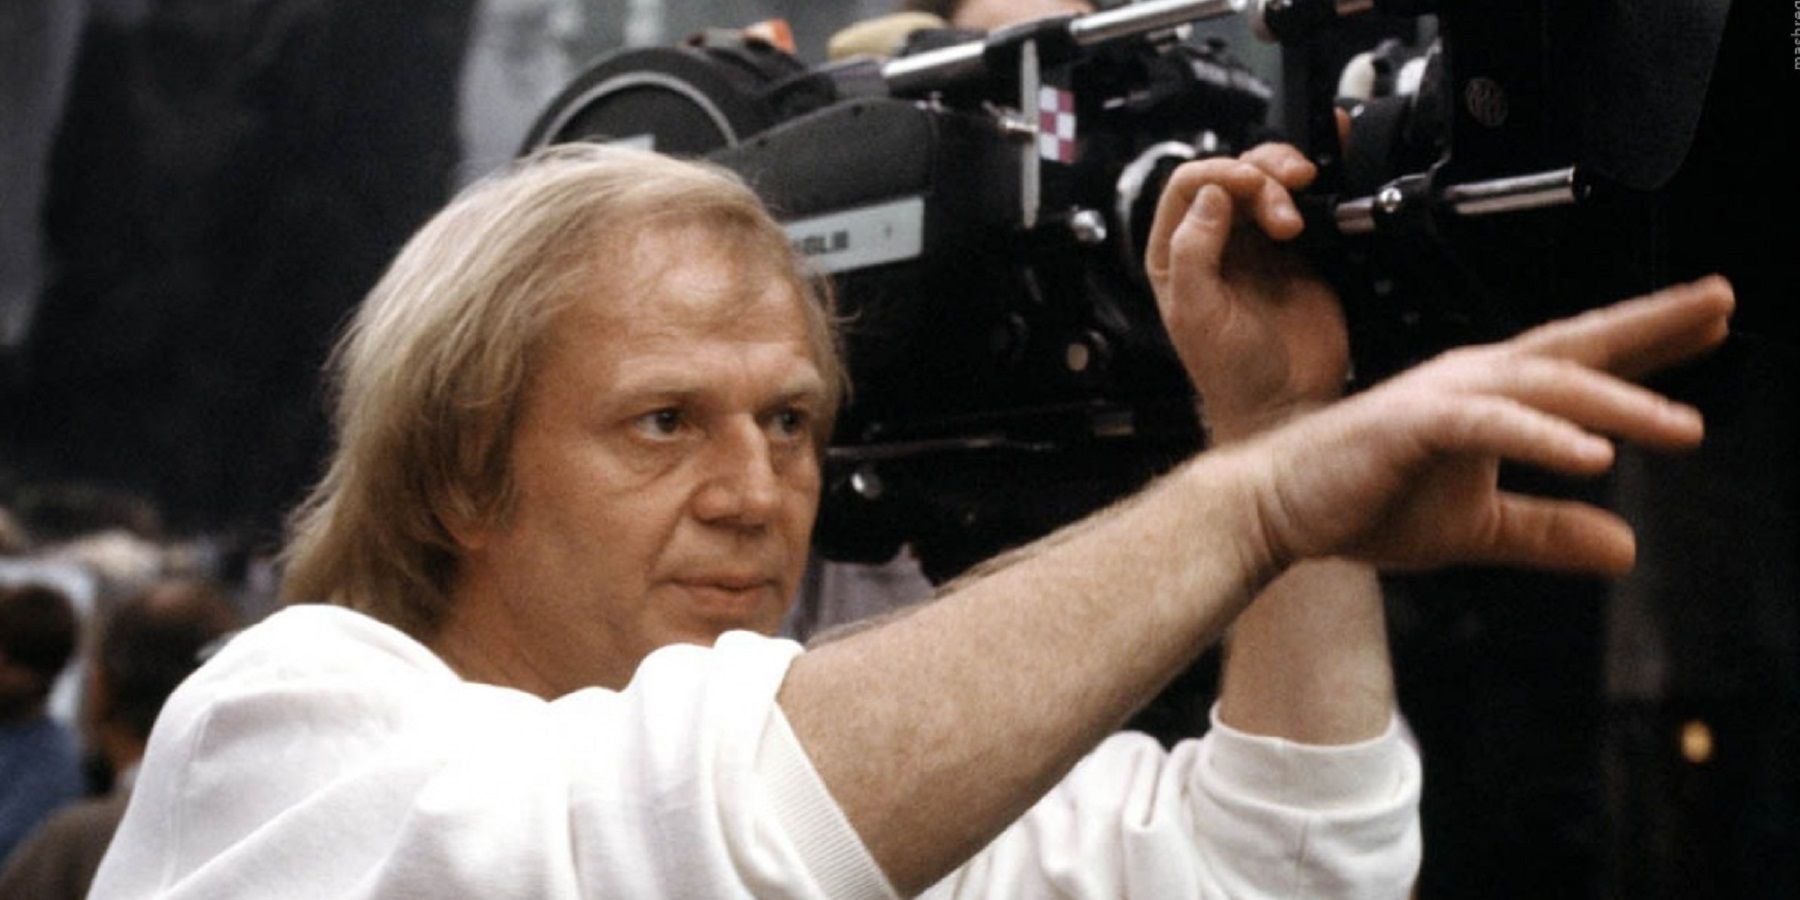 Wolfgang Petersen directing pointing